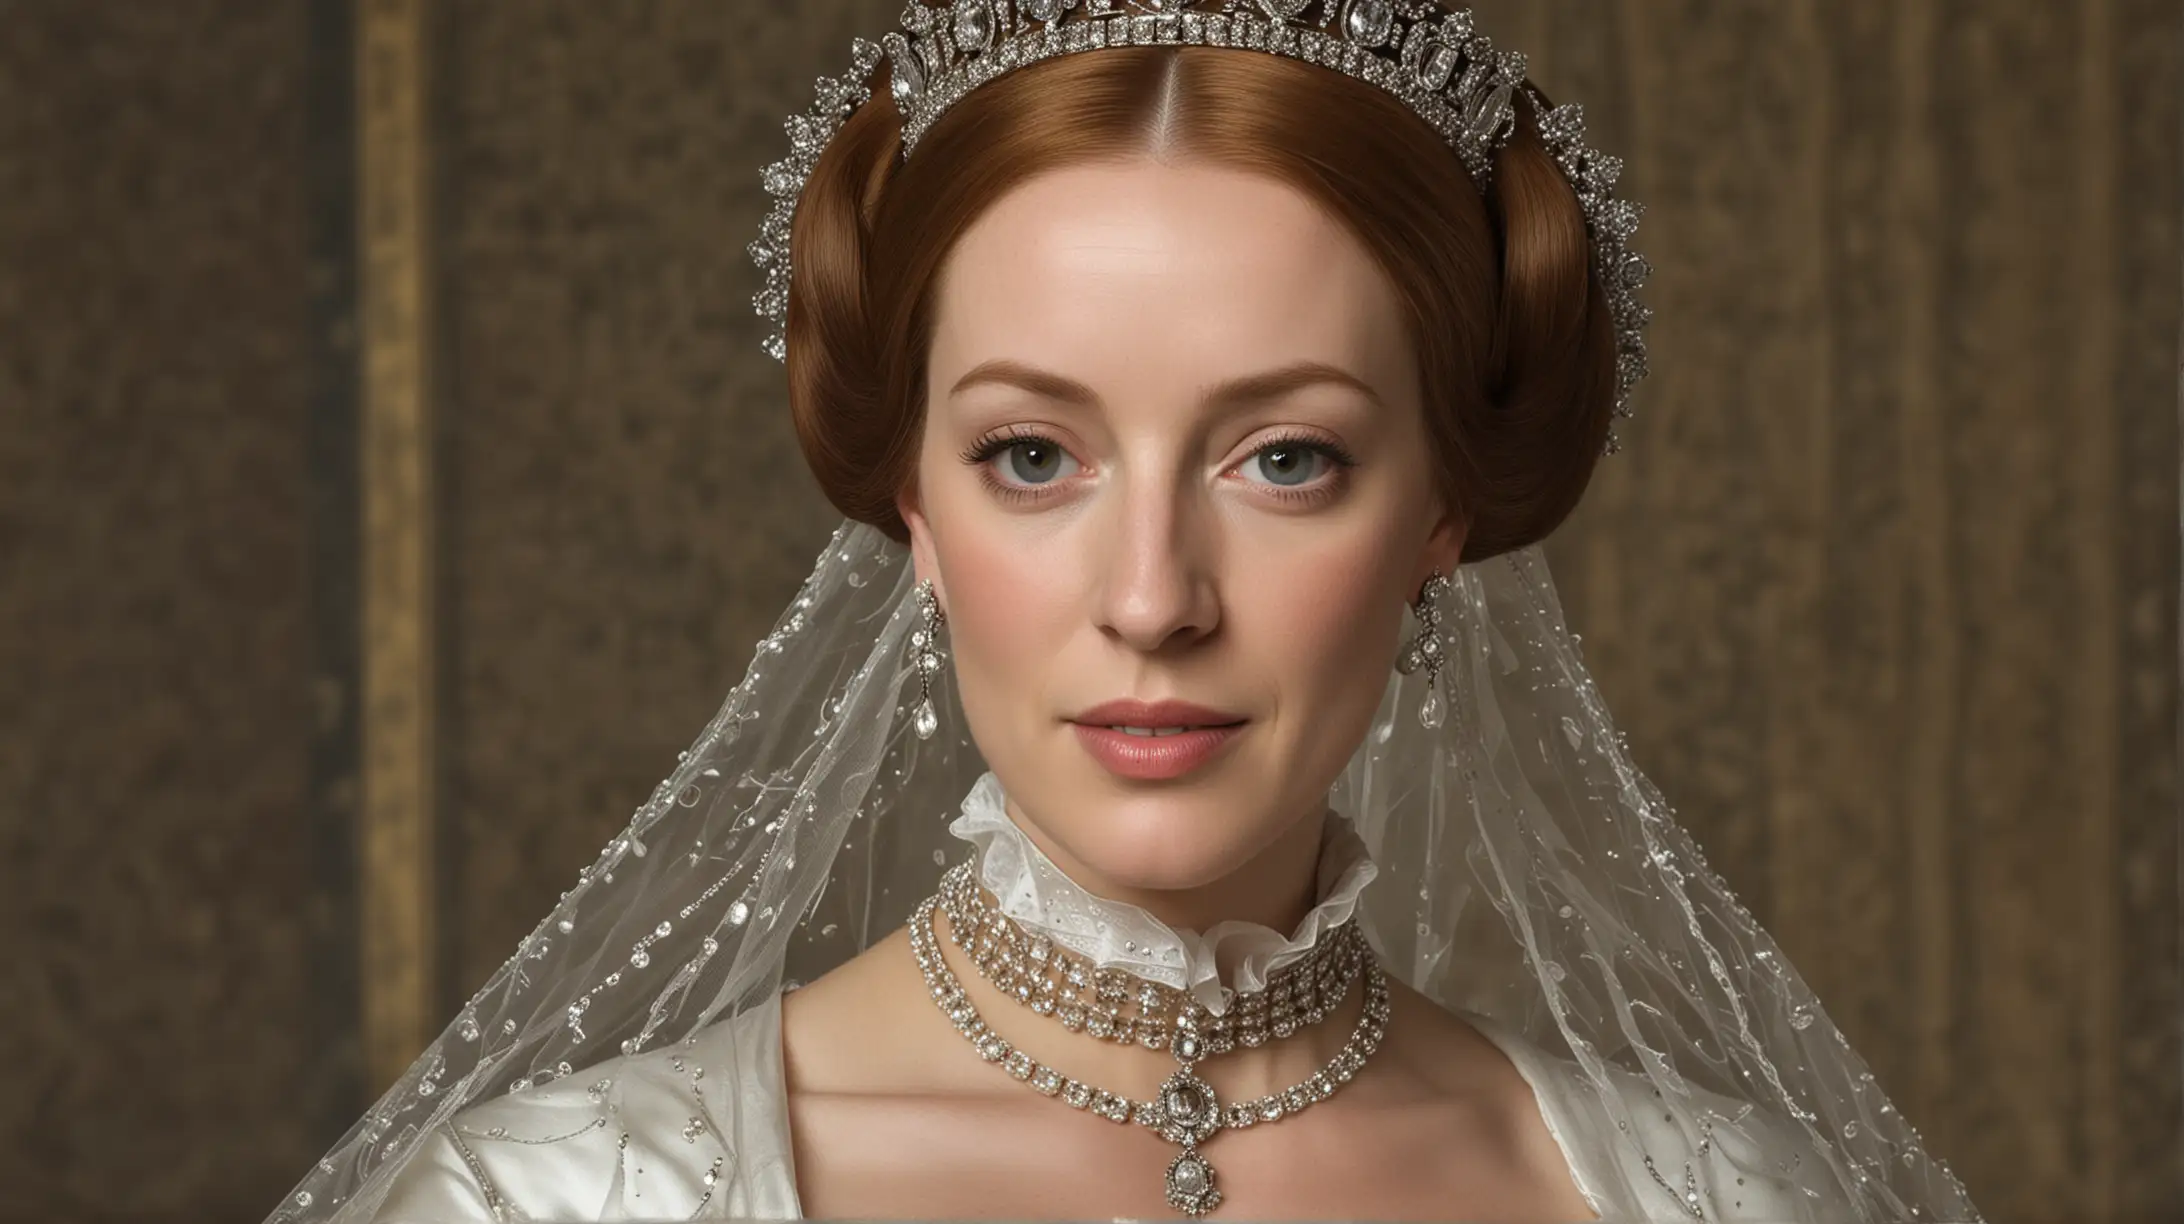 dame una imagen realista de María I de Inglaterra como tomada con una cámara profesional 